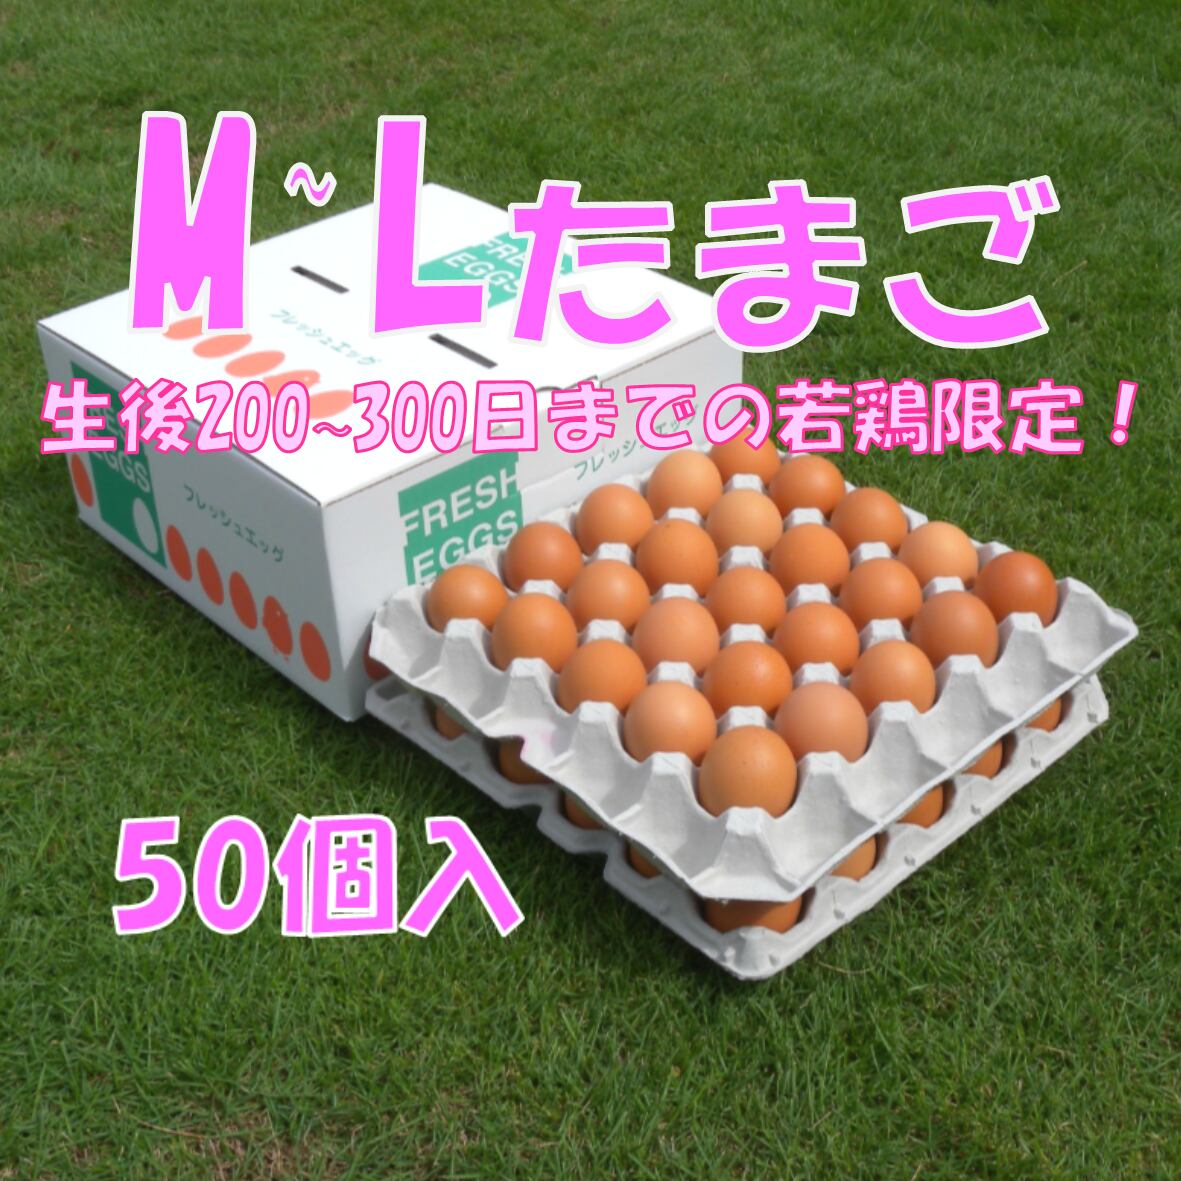 若鶏の赤卵 】朝採りM~Lサイズ☆M-L50個入たまご | サカモトの赤卵